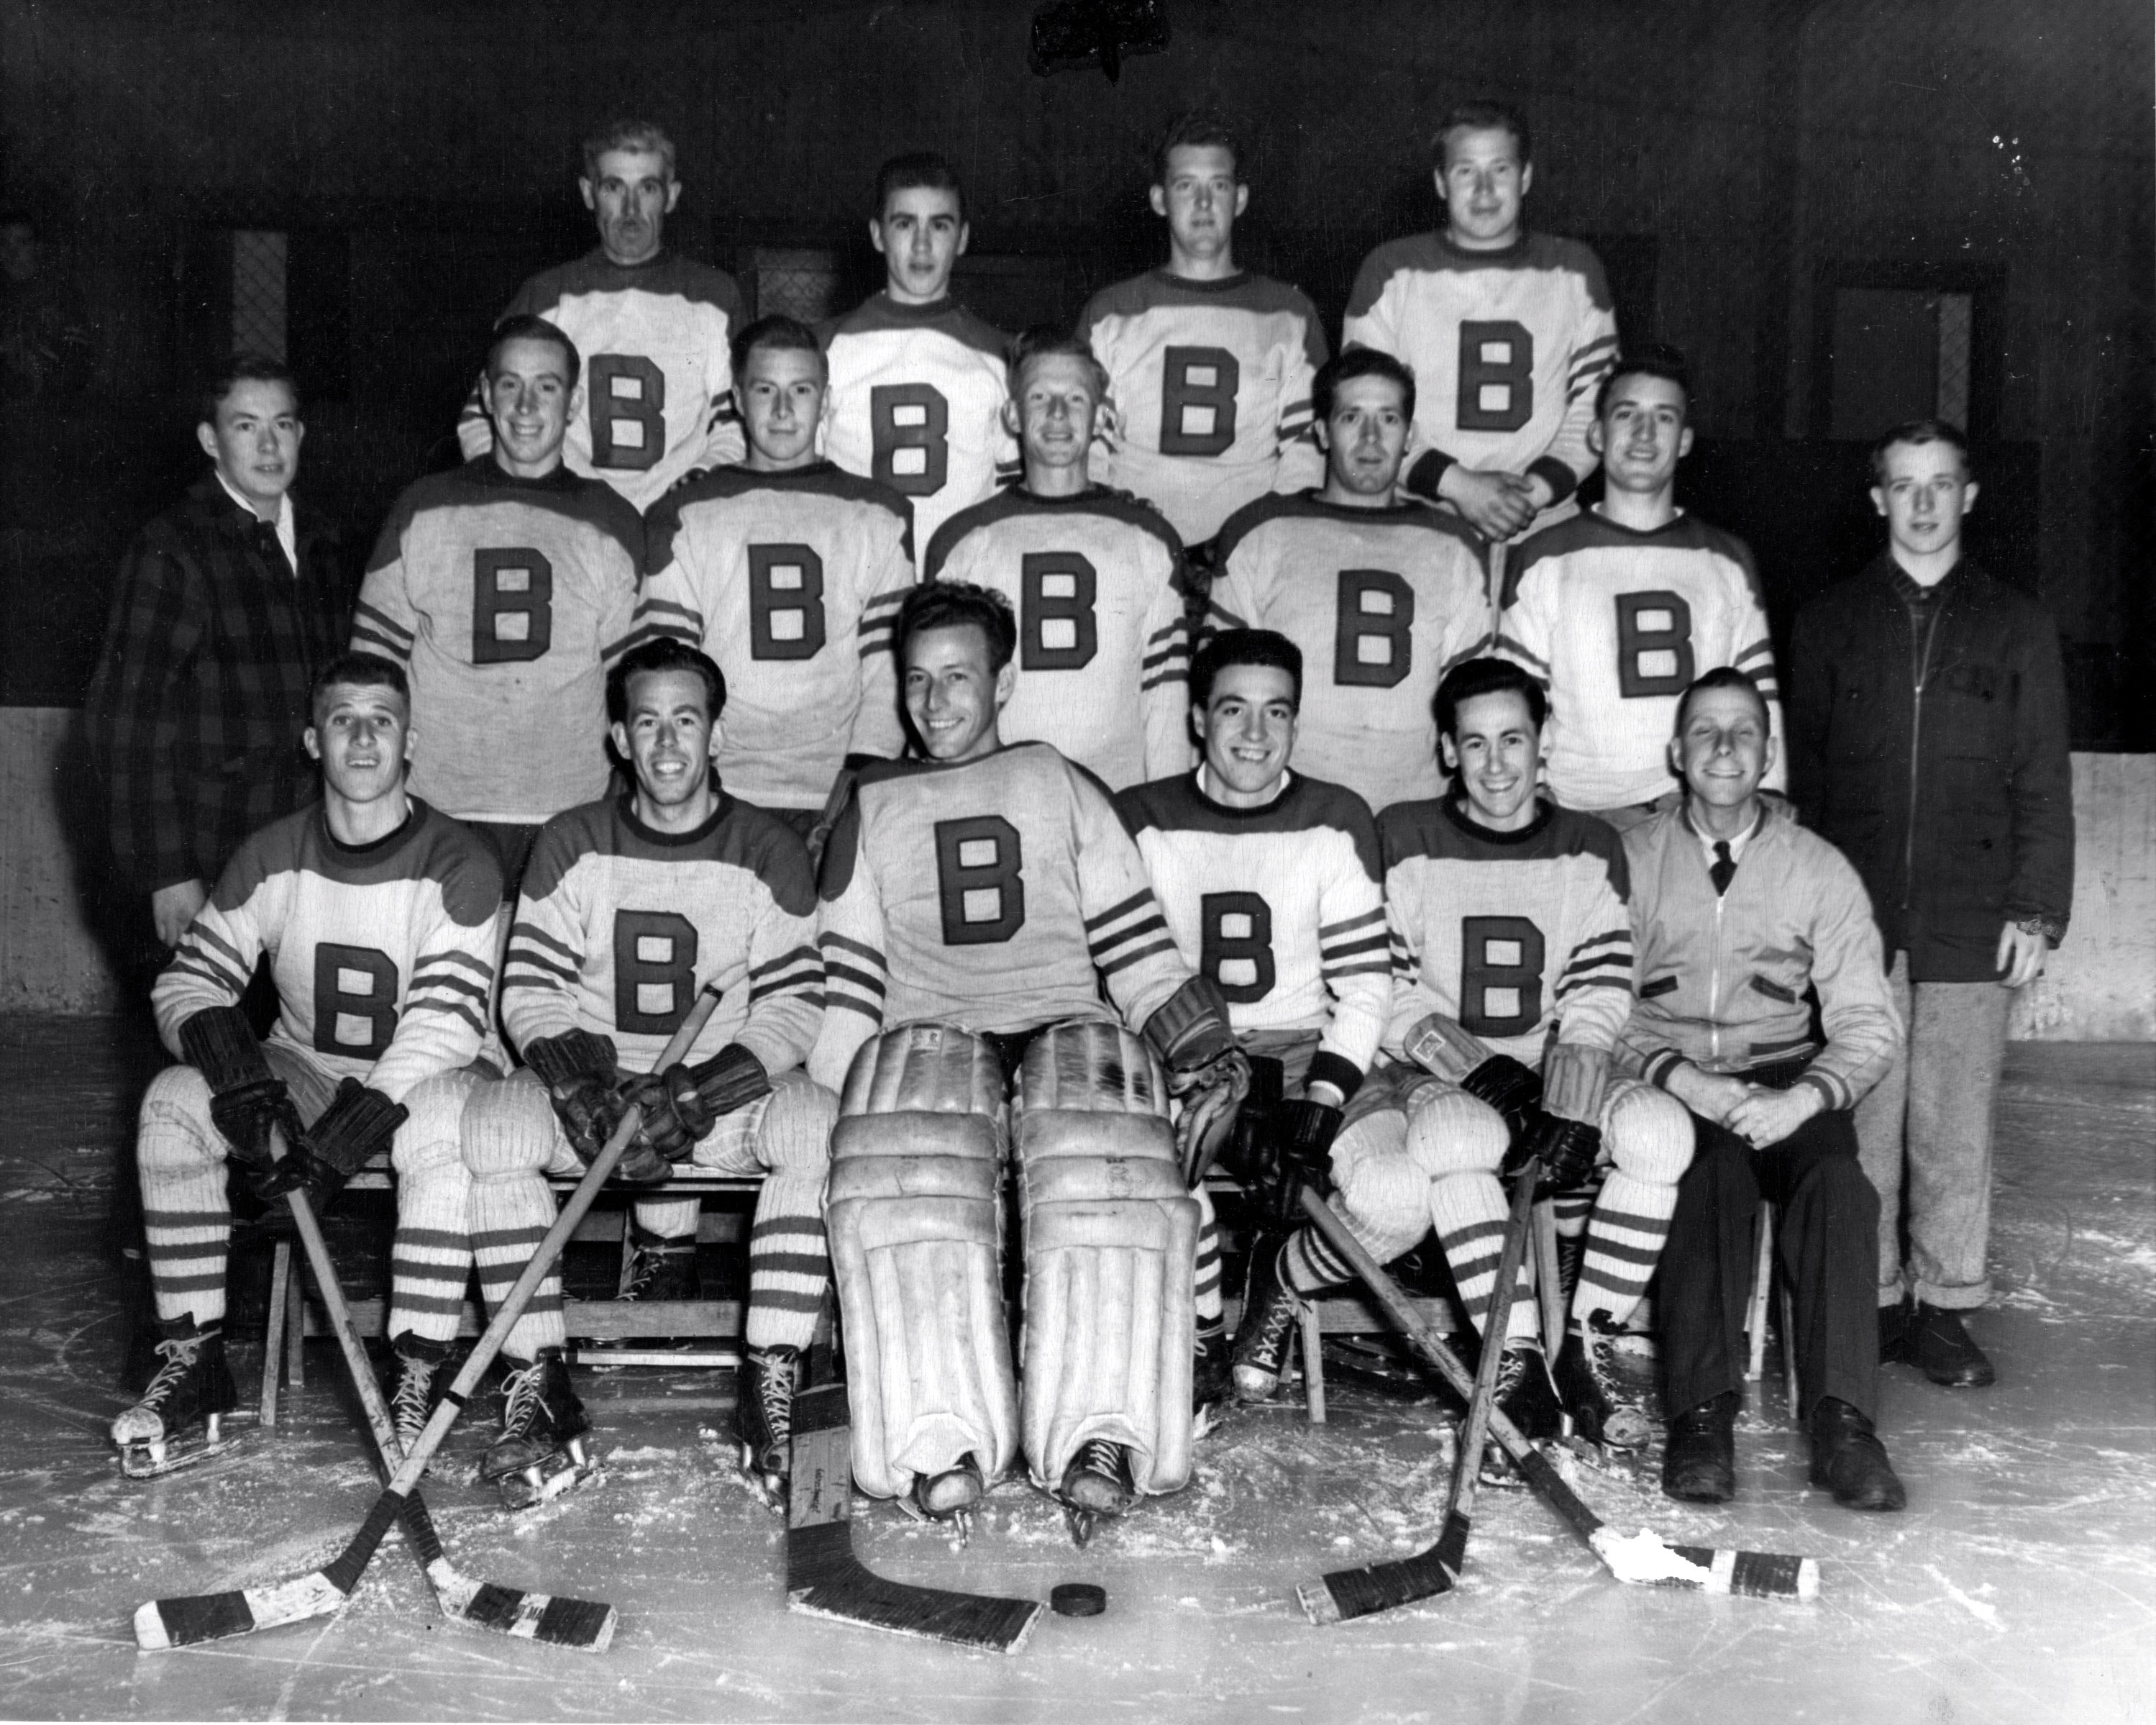 Une photo d’une équipe de hockey montre des joueurs vêtus d’un chandail blanc avec la lettre B au centre.